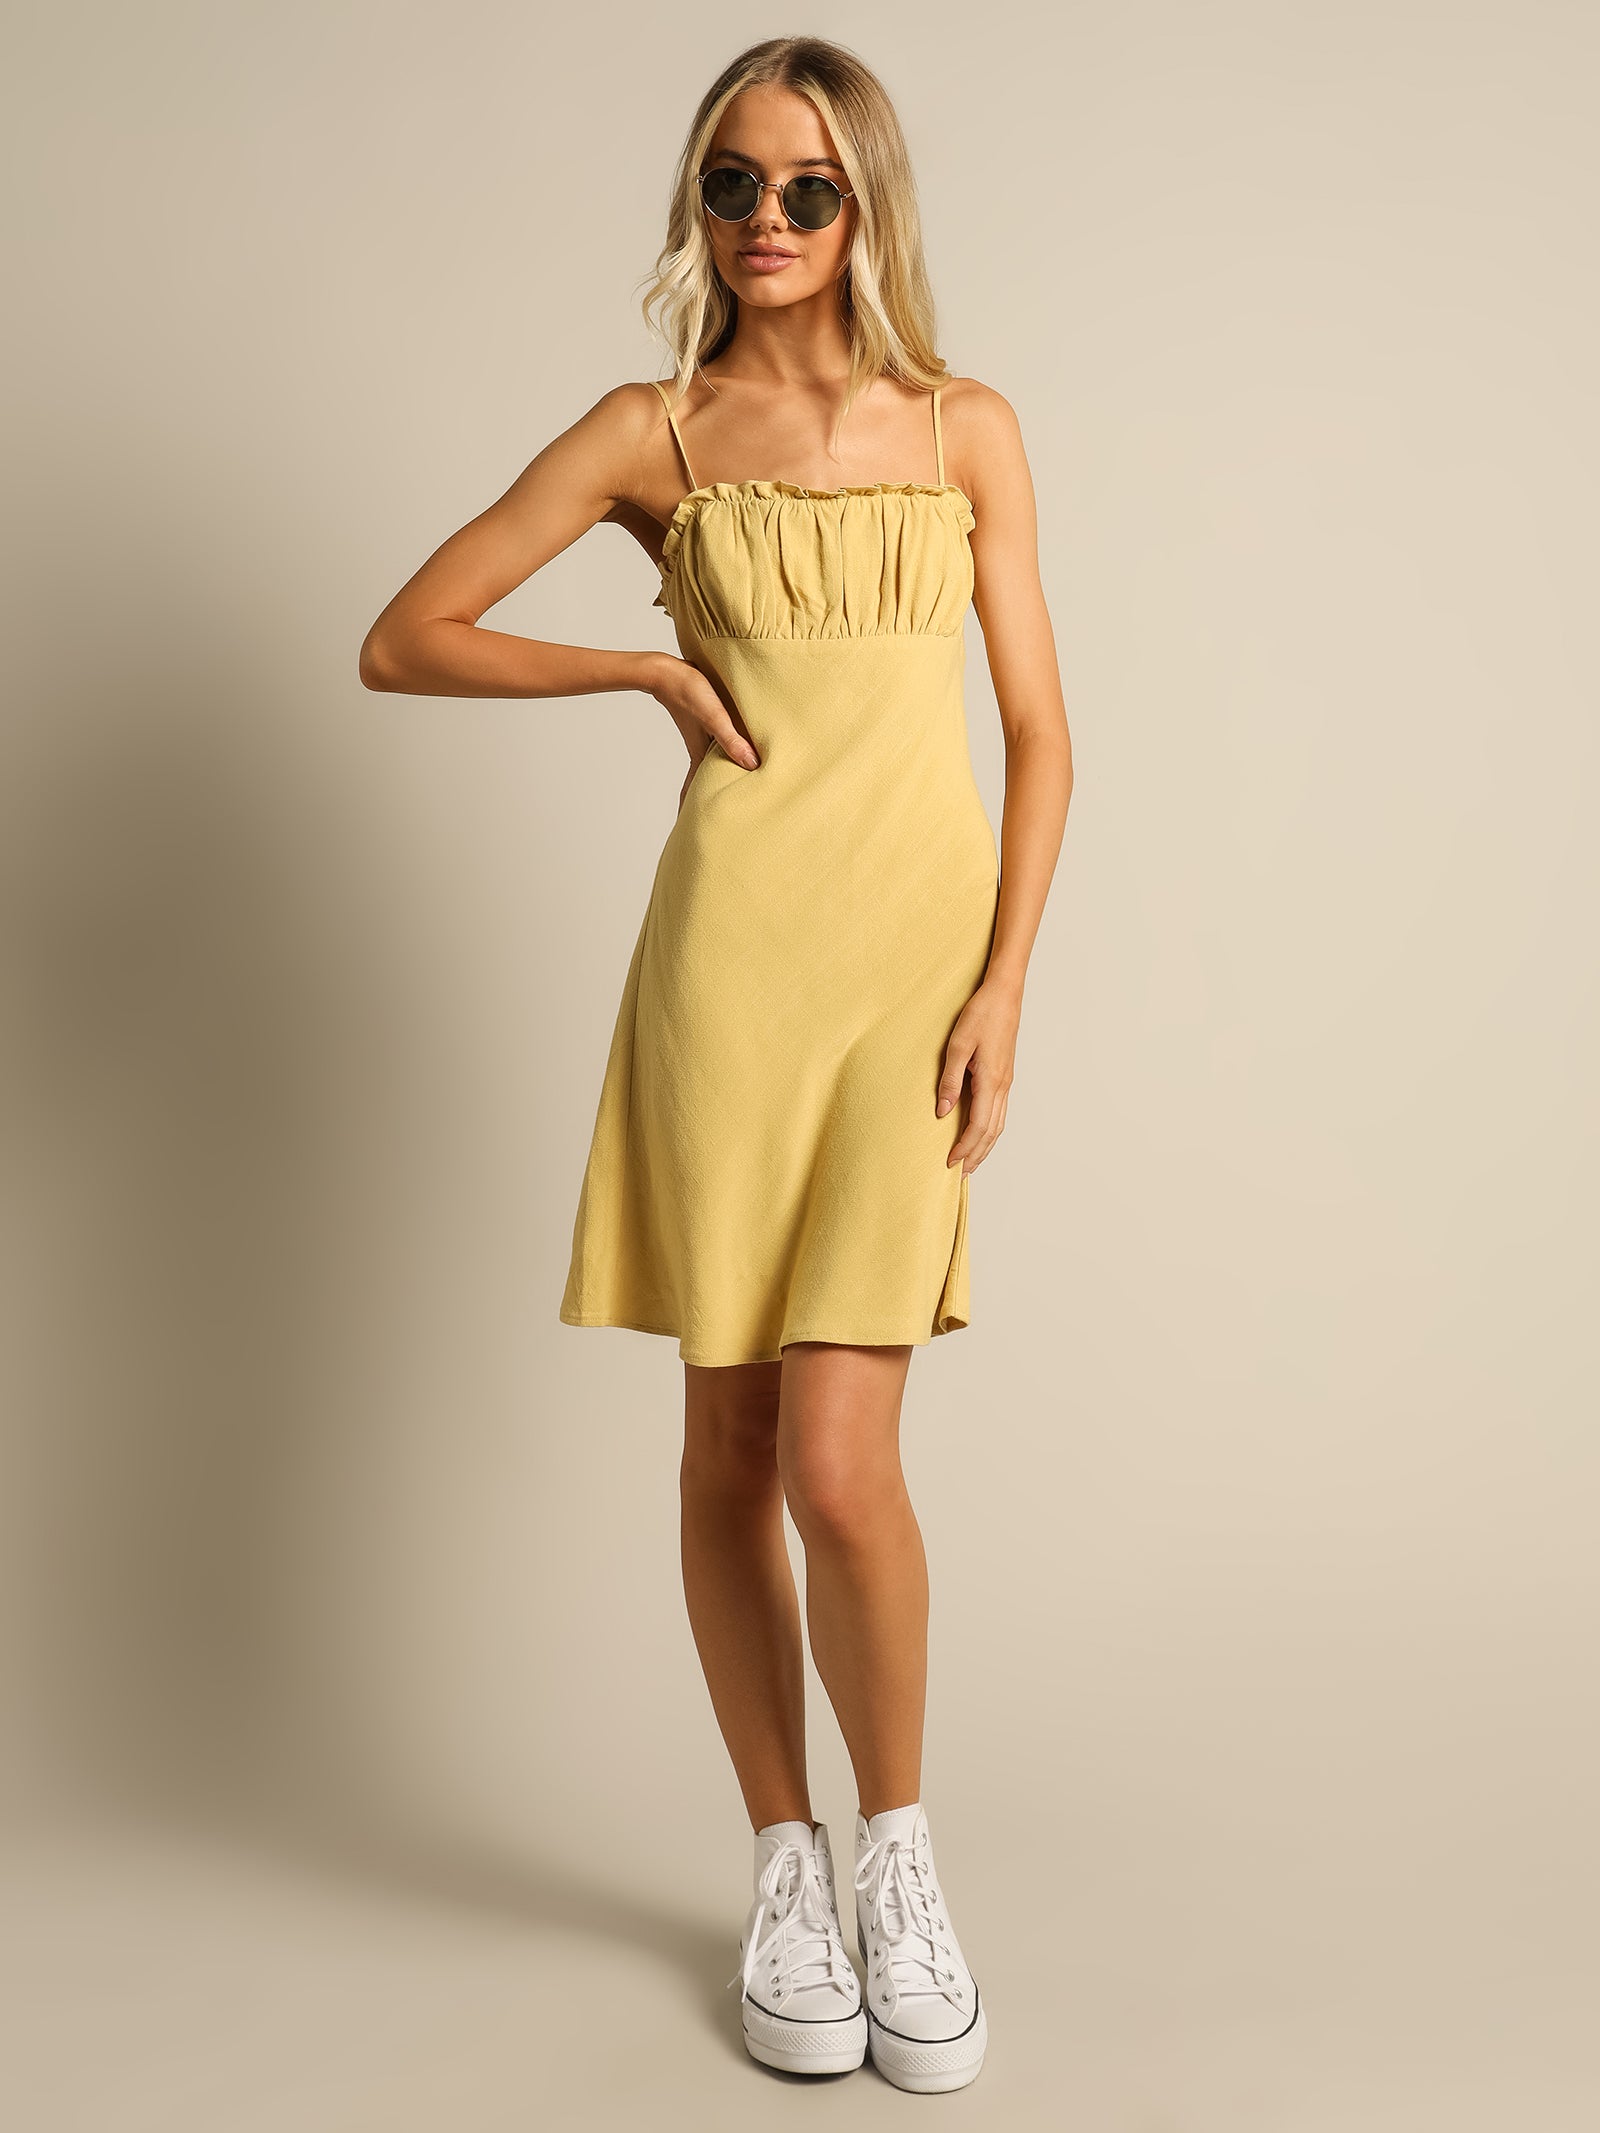 Celia Mini Dress in Lemon